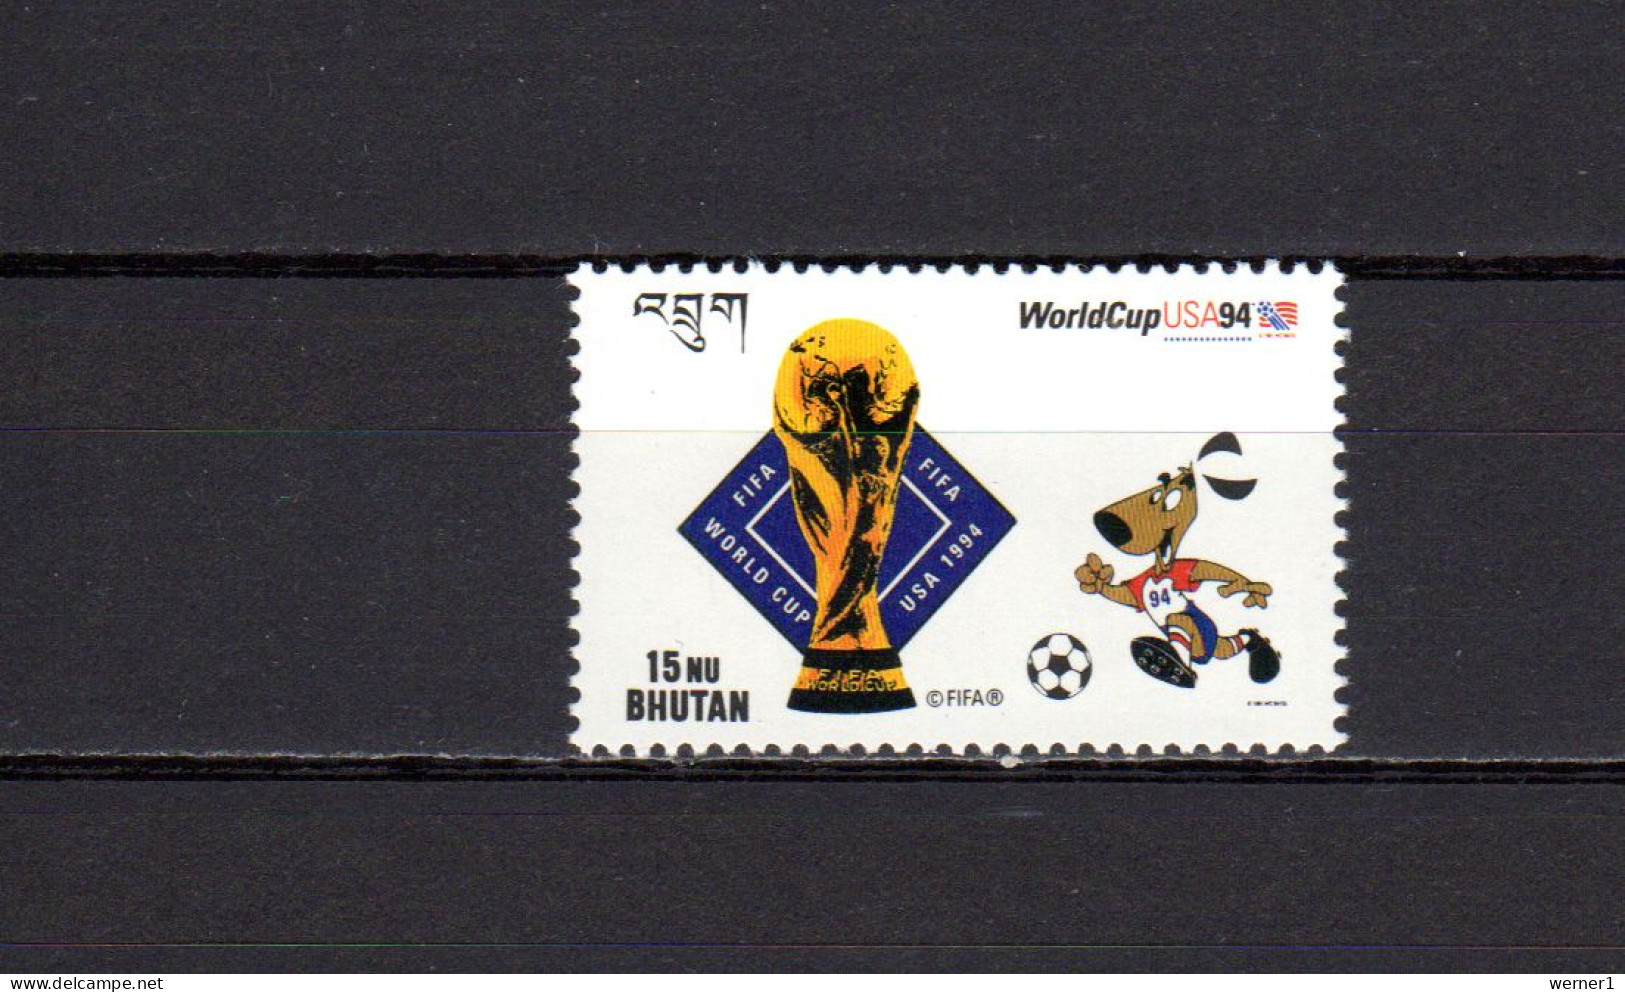 Bhutan 1994 Football Soccer World Cup Stamp MNH - 1994 – Vereinigte Staaten